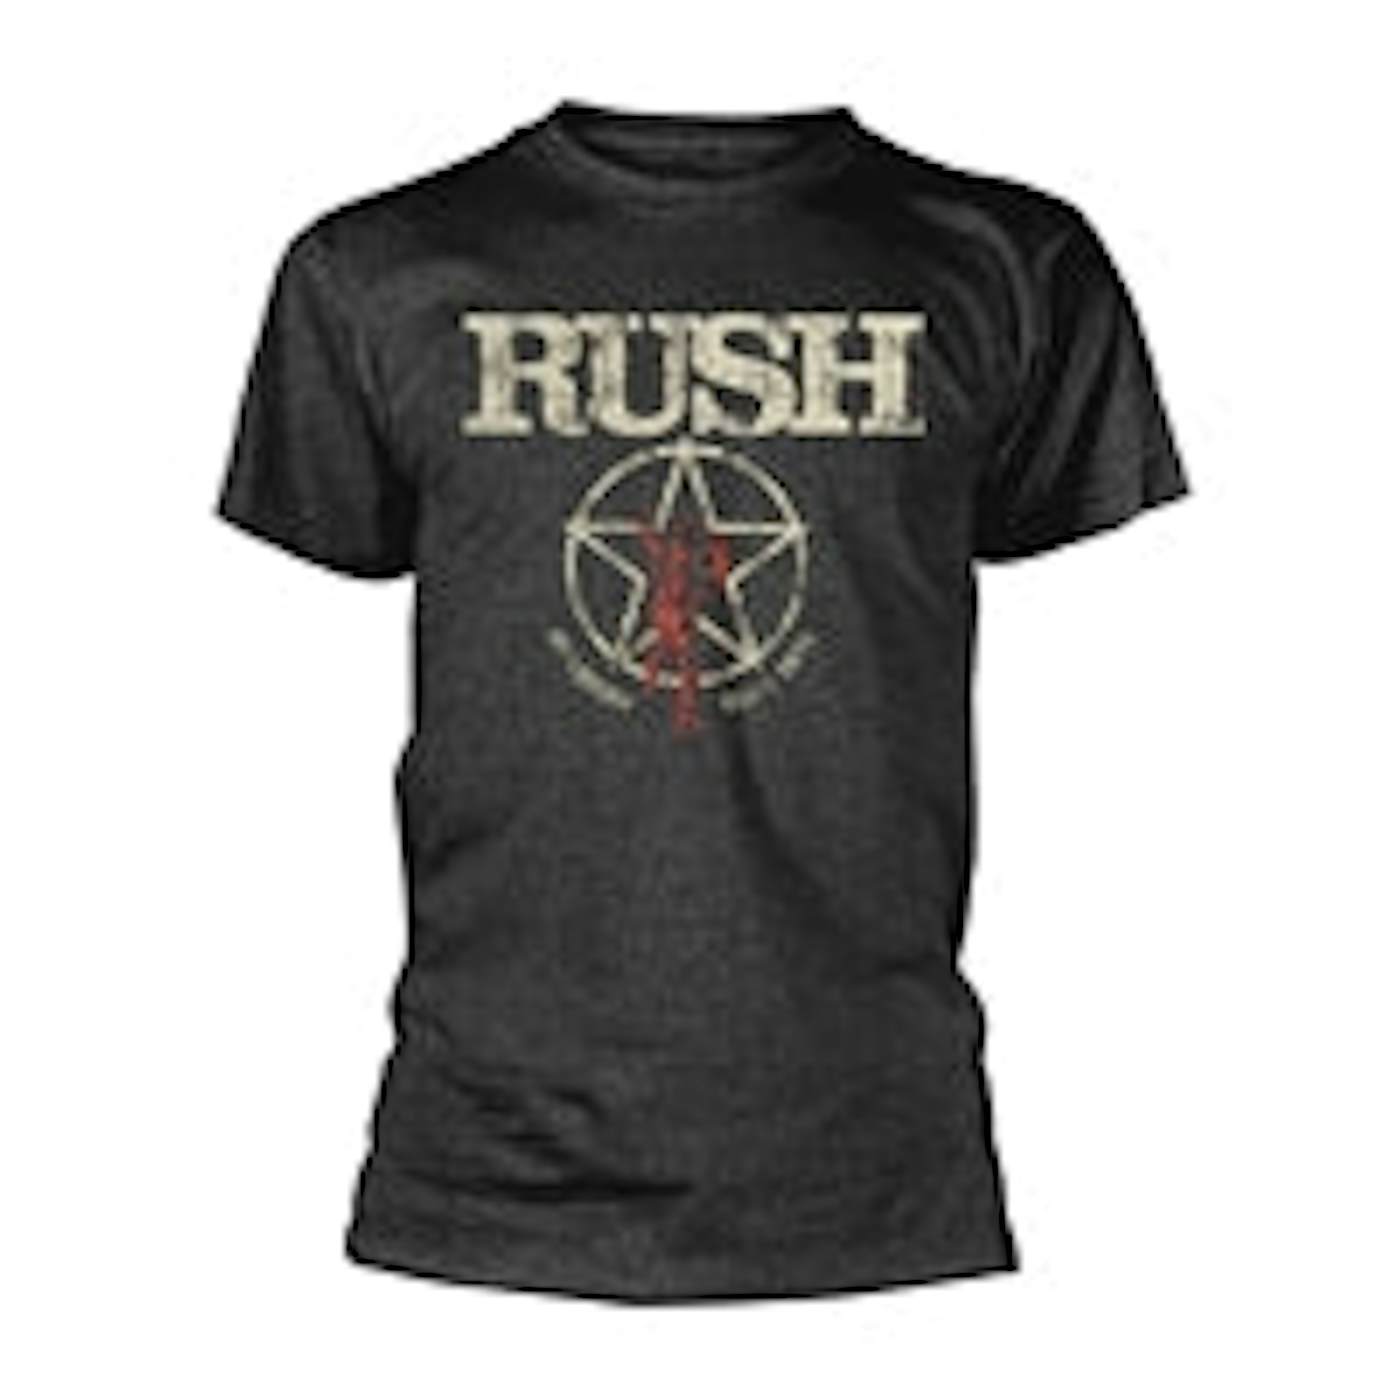 Rush T Shirt - American Tour 1977 (Dark Heather)